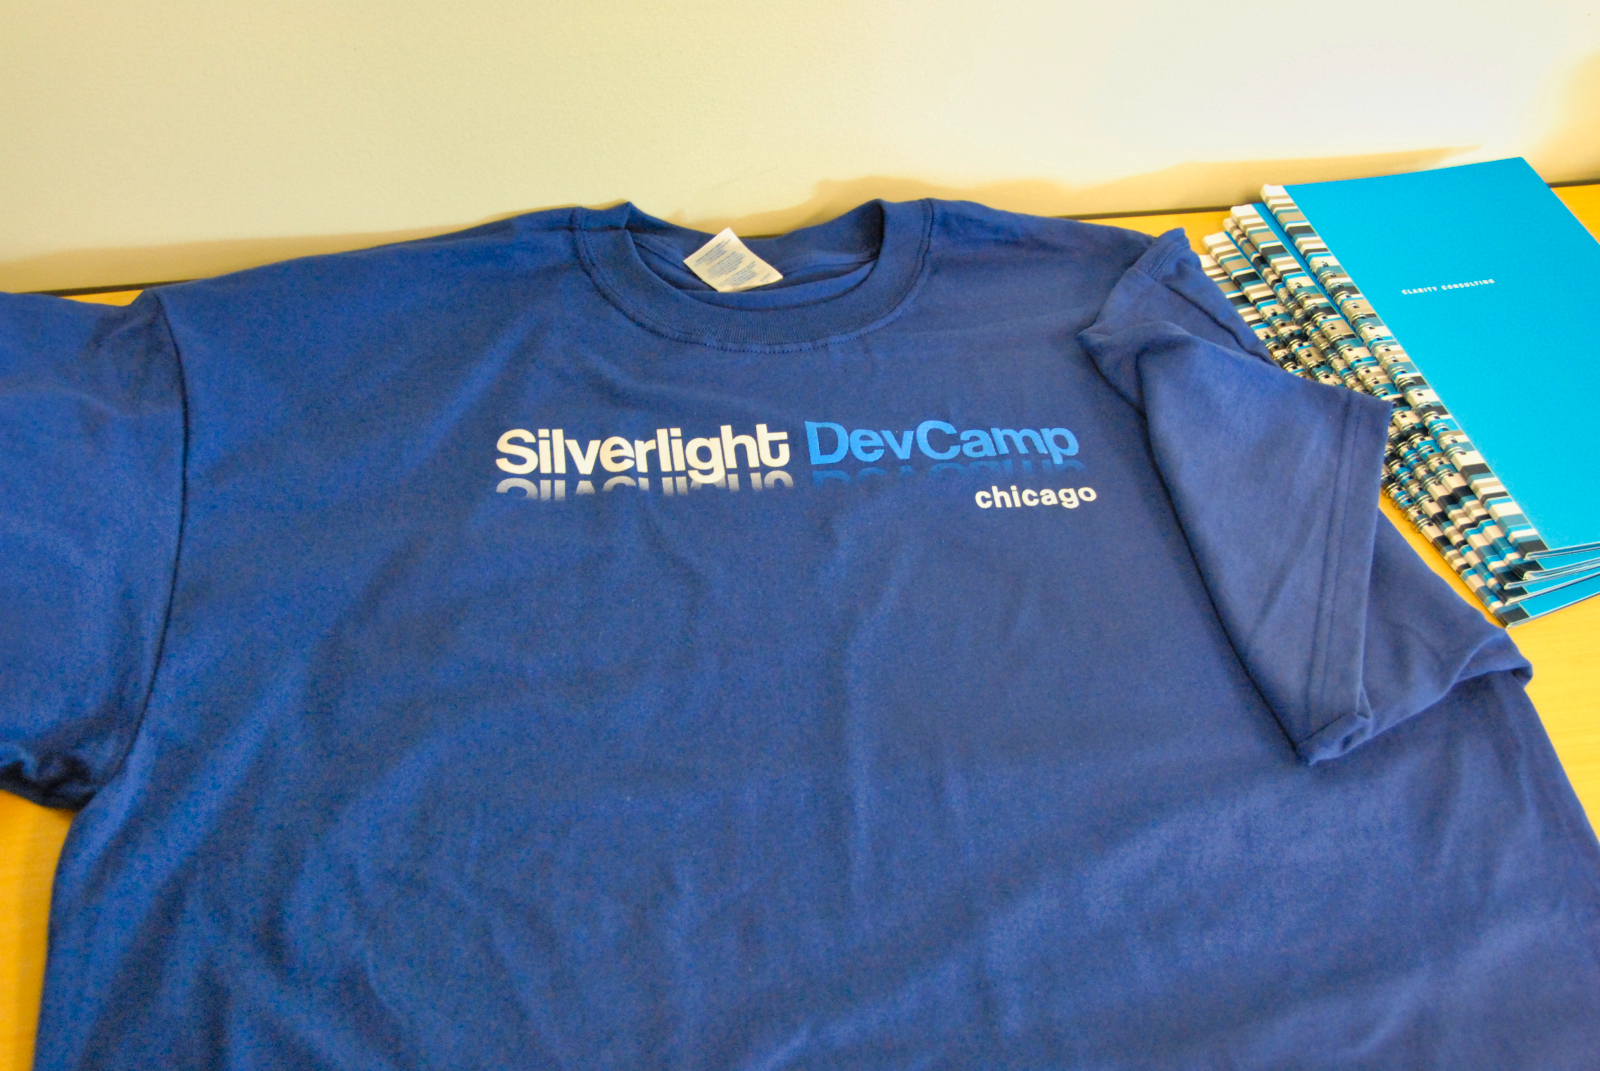 T-Shirt from Silverlight DevCamp